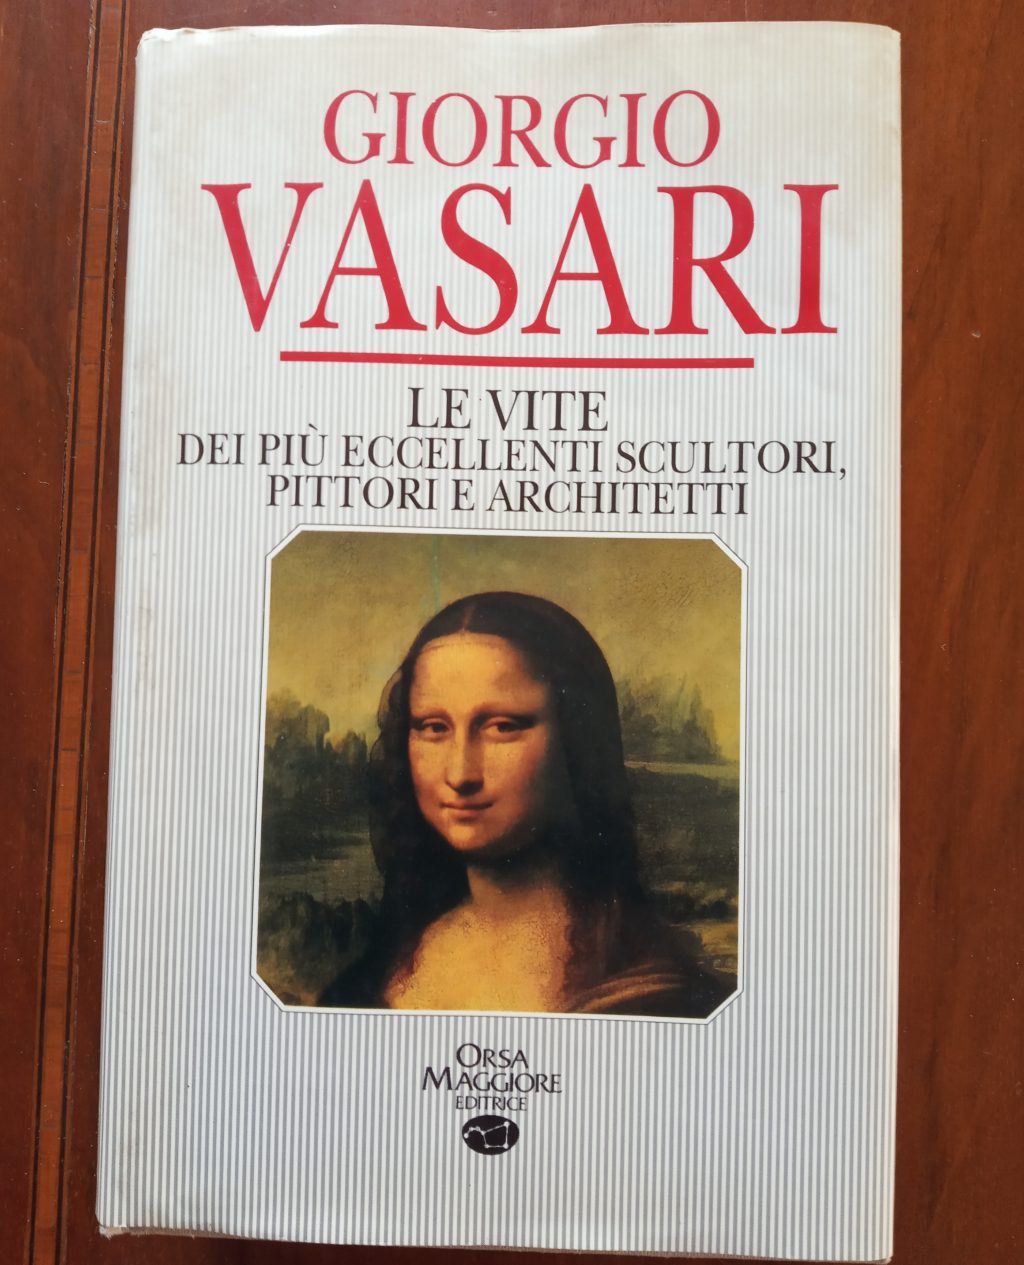 Giorgio Vasari, Vite dei più eccellenti scultori, pittori e architetti